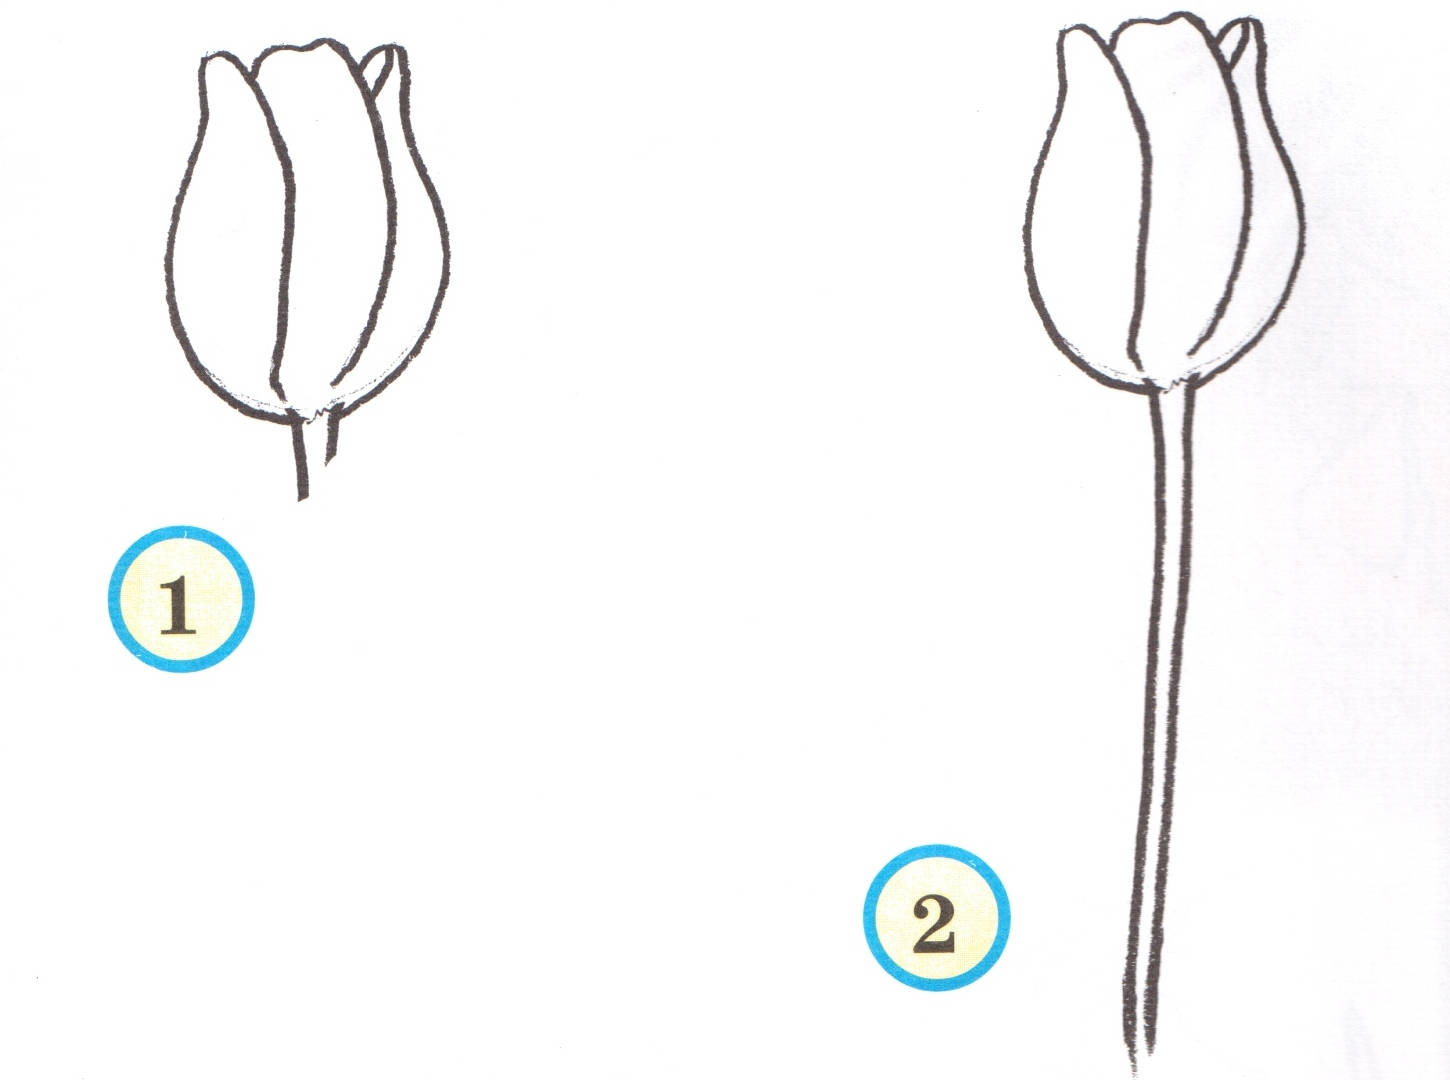 В изображенном на рисунке опыте тюльпан